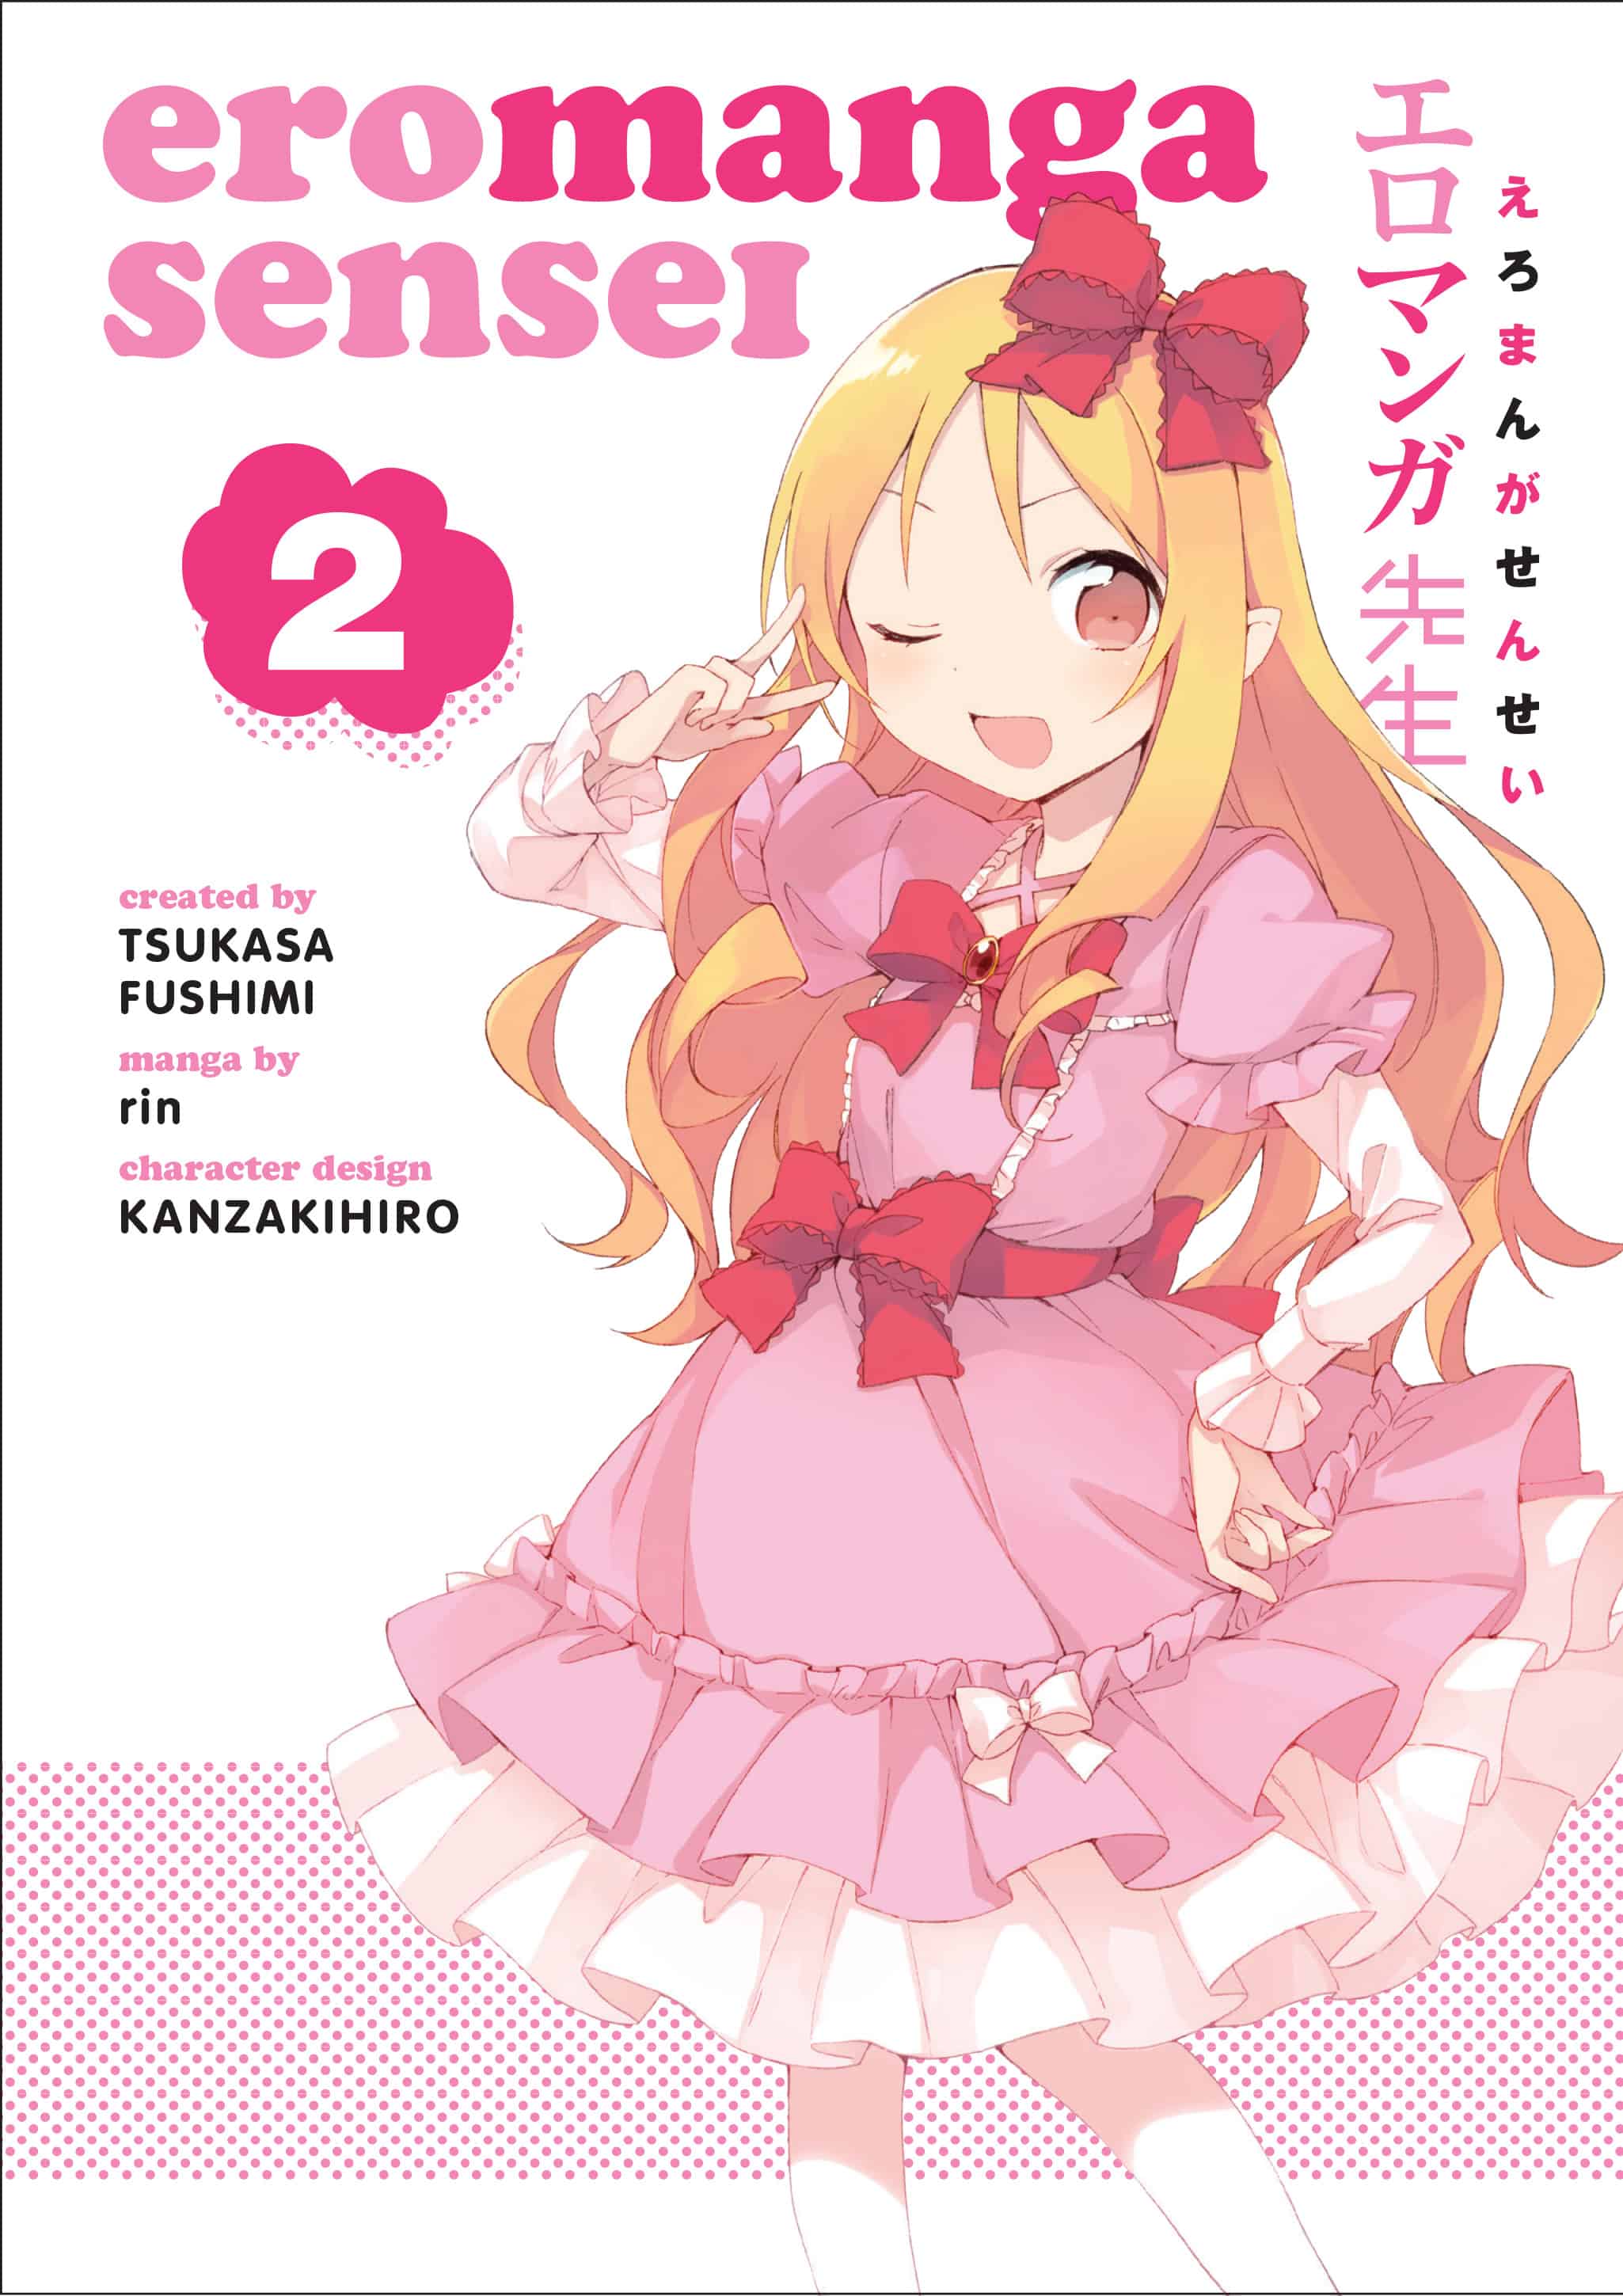 Ero-manga sensei Vol. 2 Manga Multizone: Comics And Games  | Multizone: Comics And Games